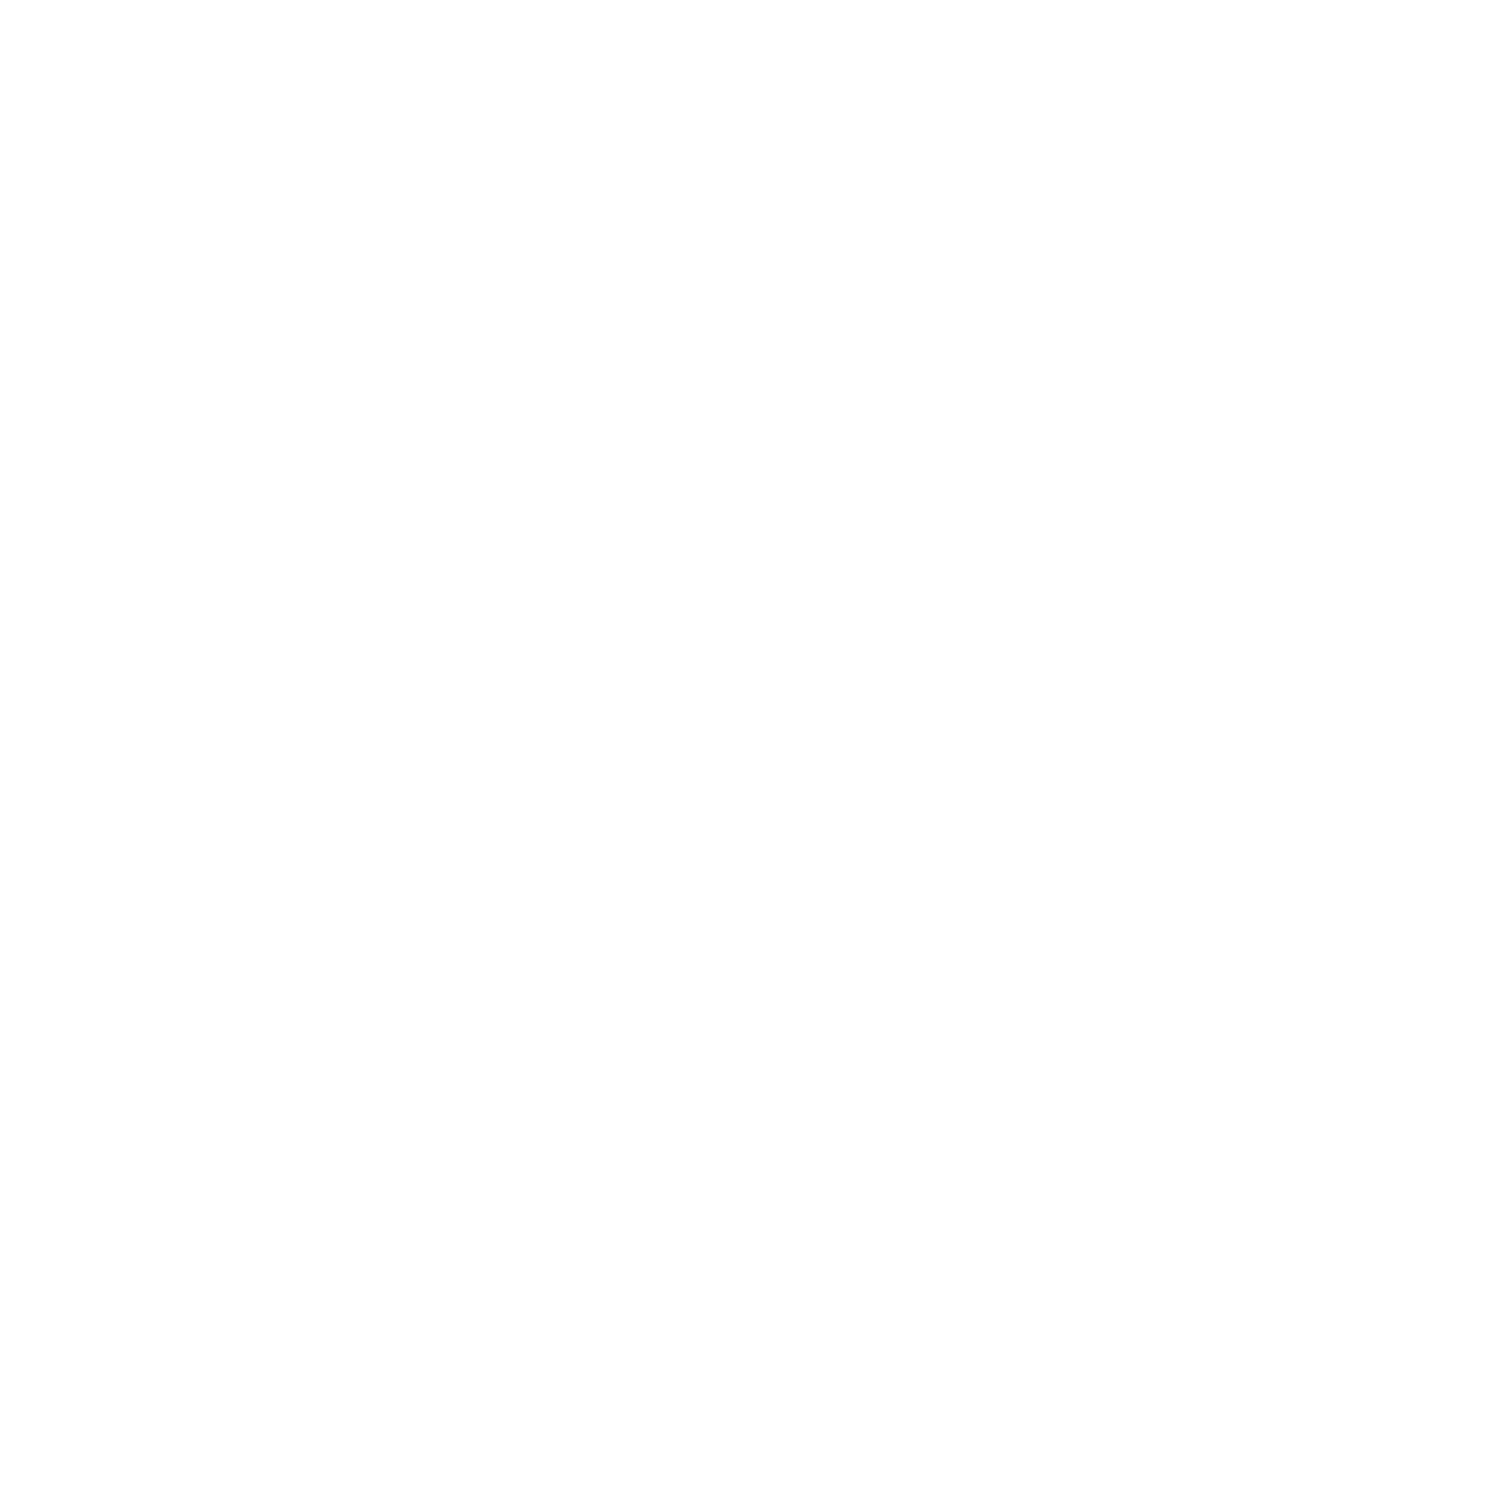 Fish4Life